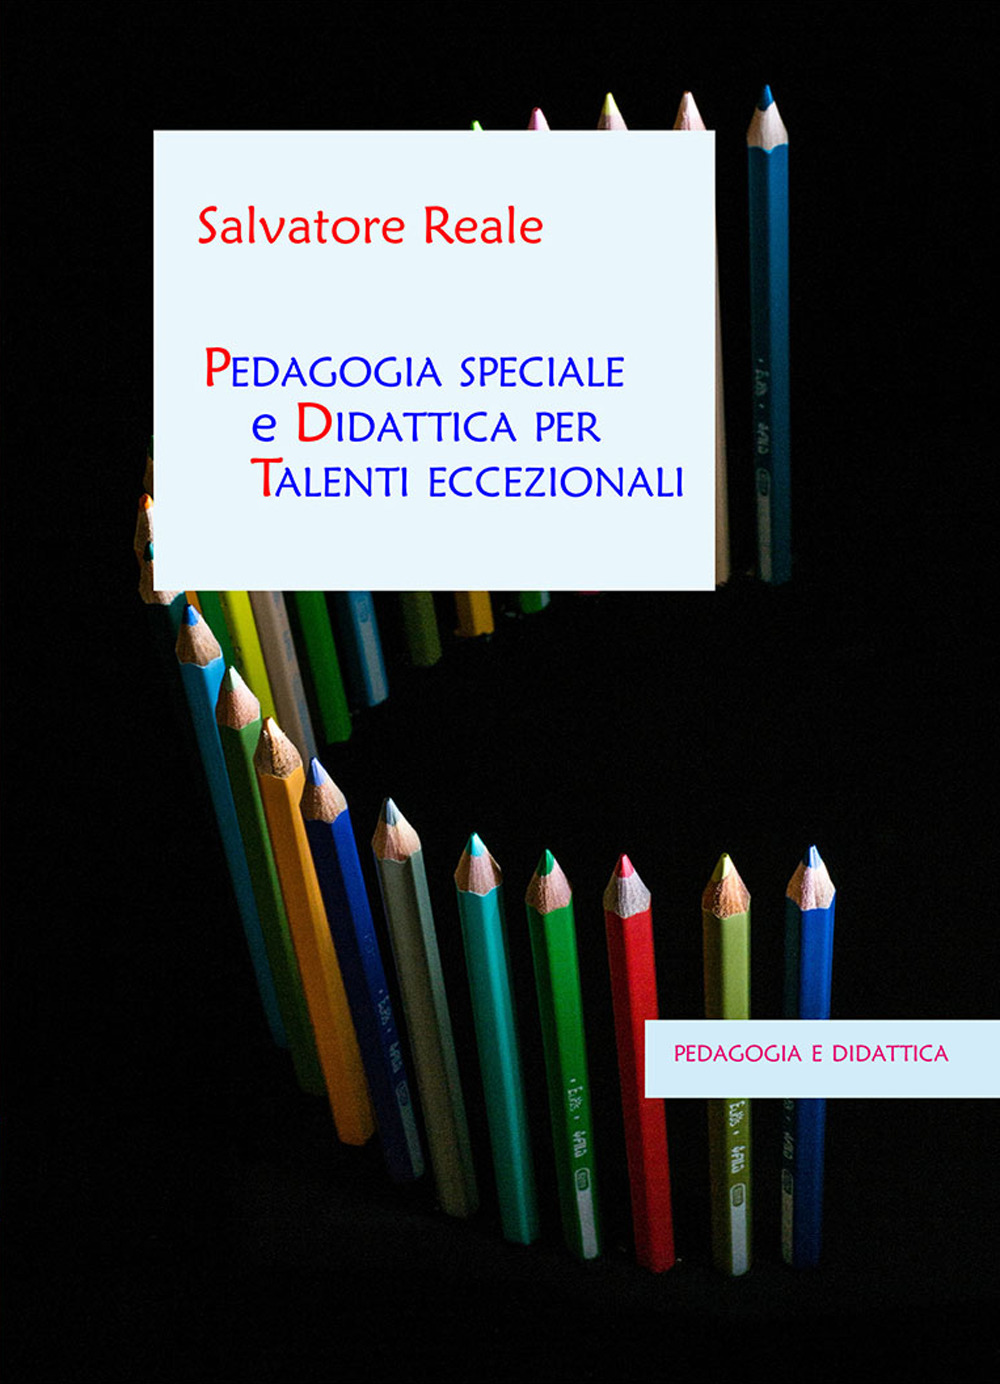 Image of Pedagogia speciale e didattica per talenti eccezionali